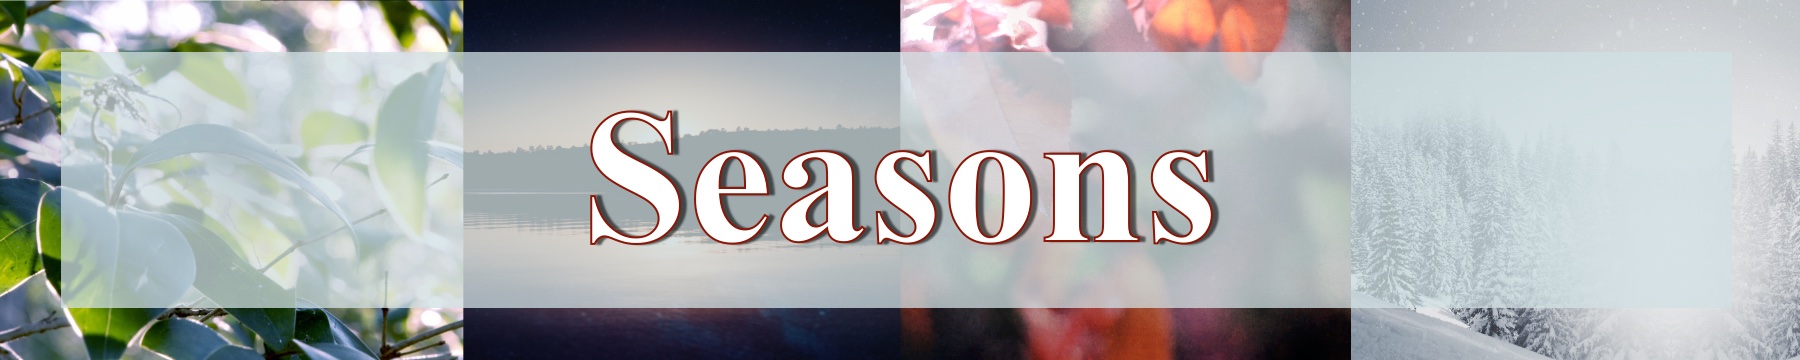 Seasons Web Panel